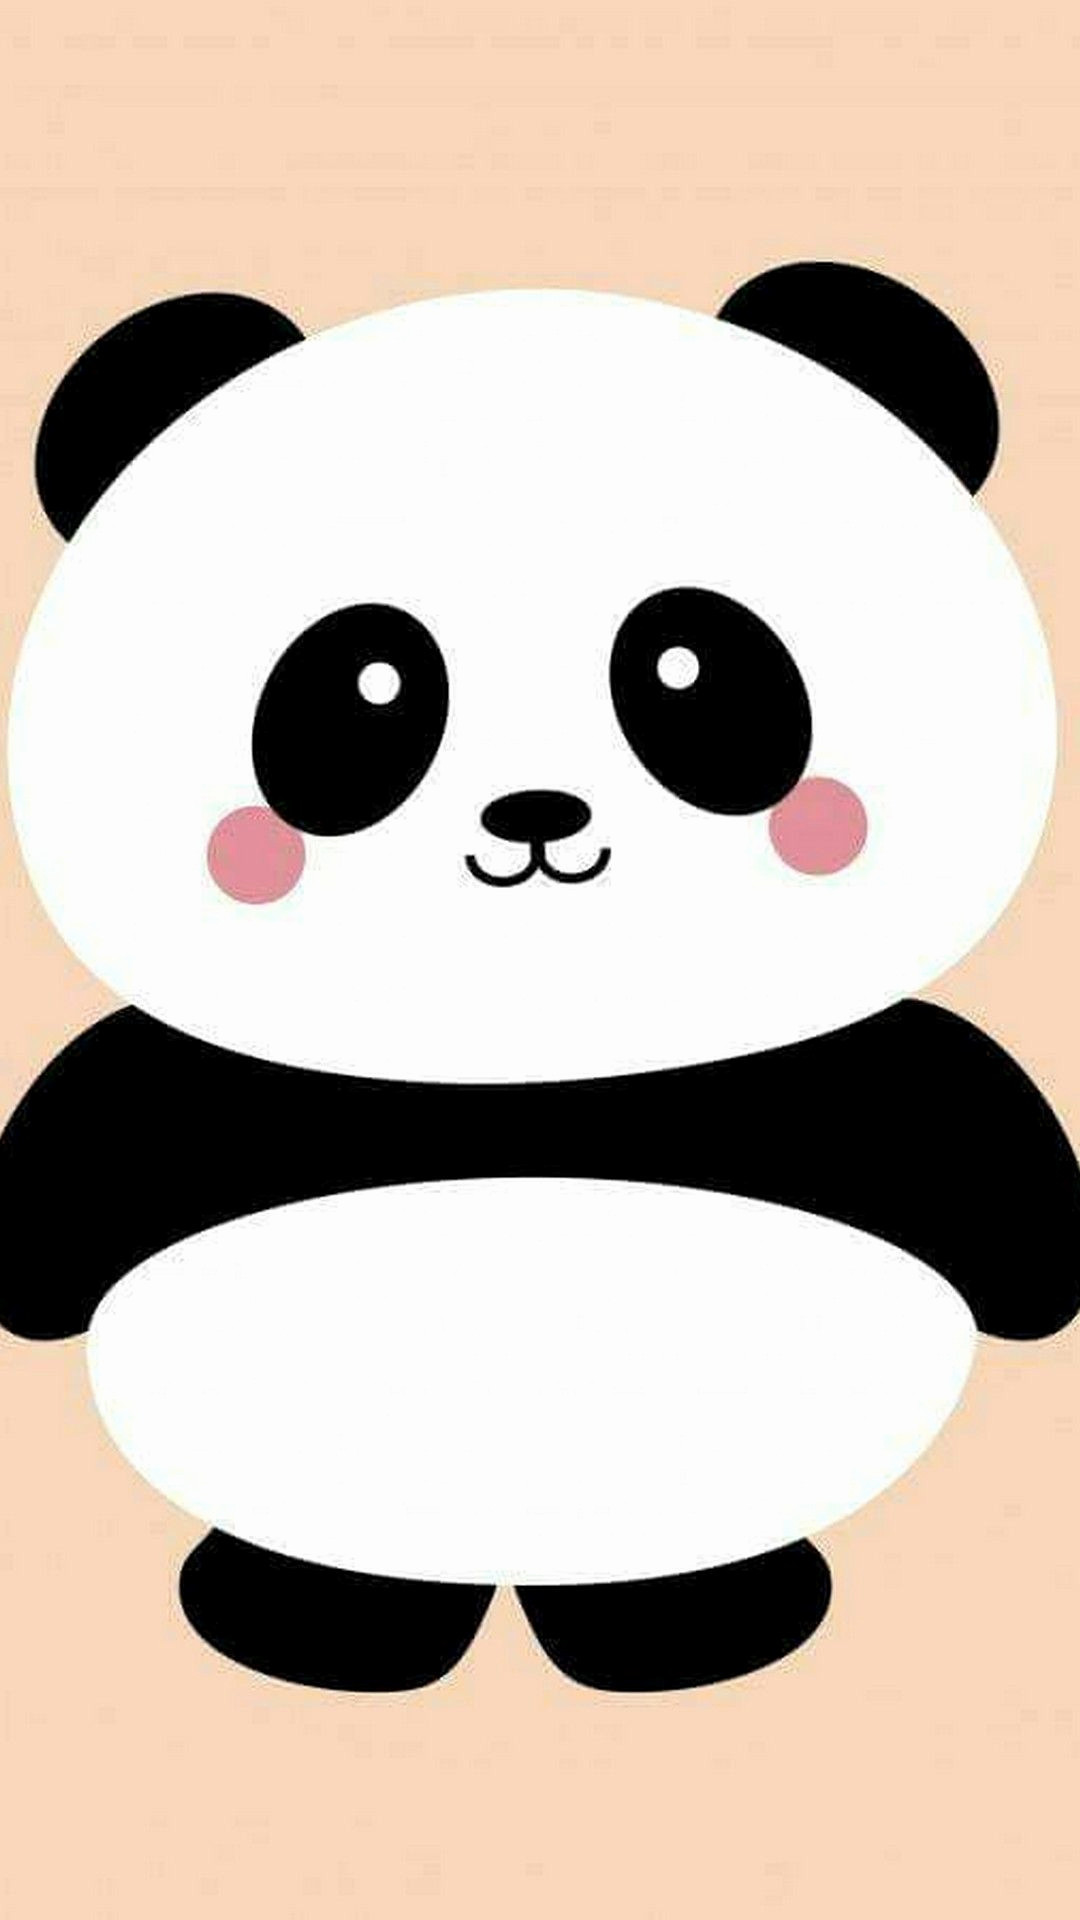 1080x1920 1920x1200 cute cartoon panda